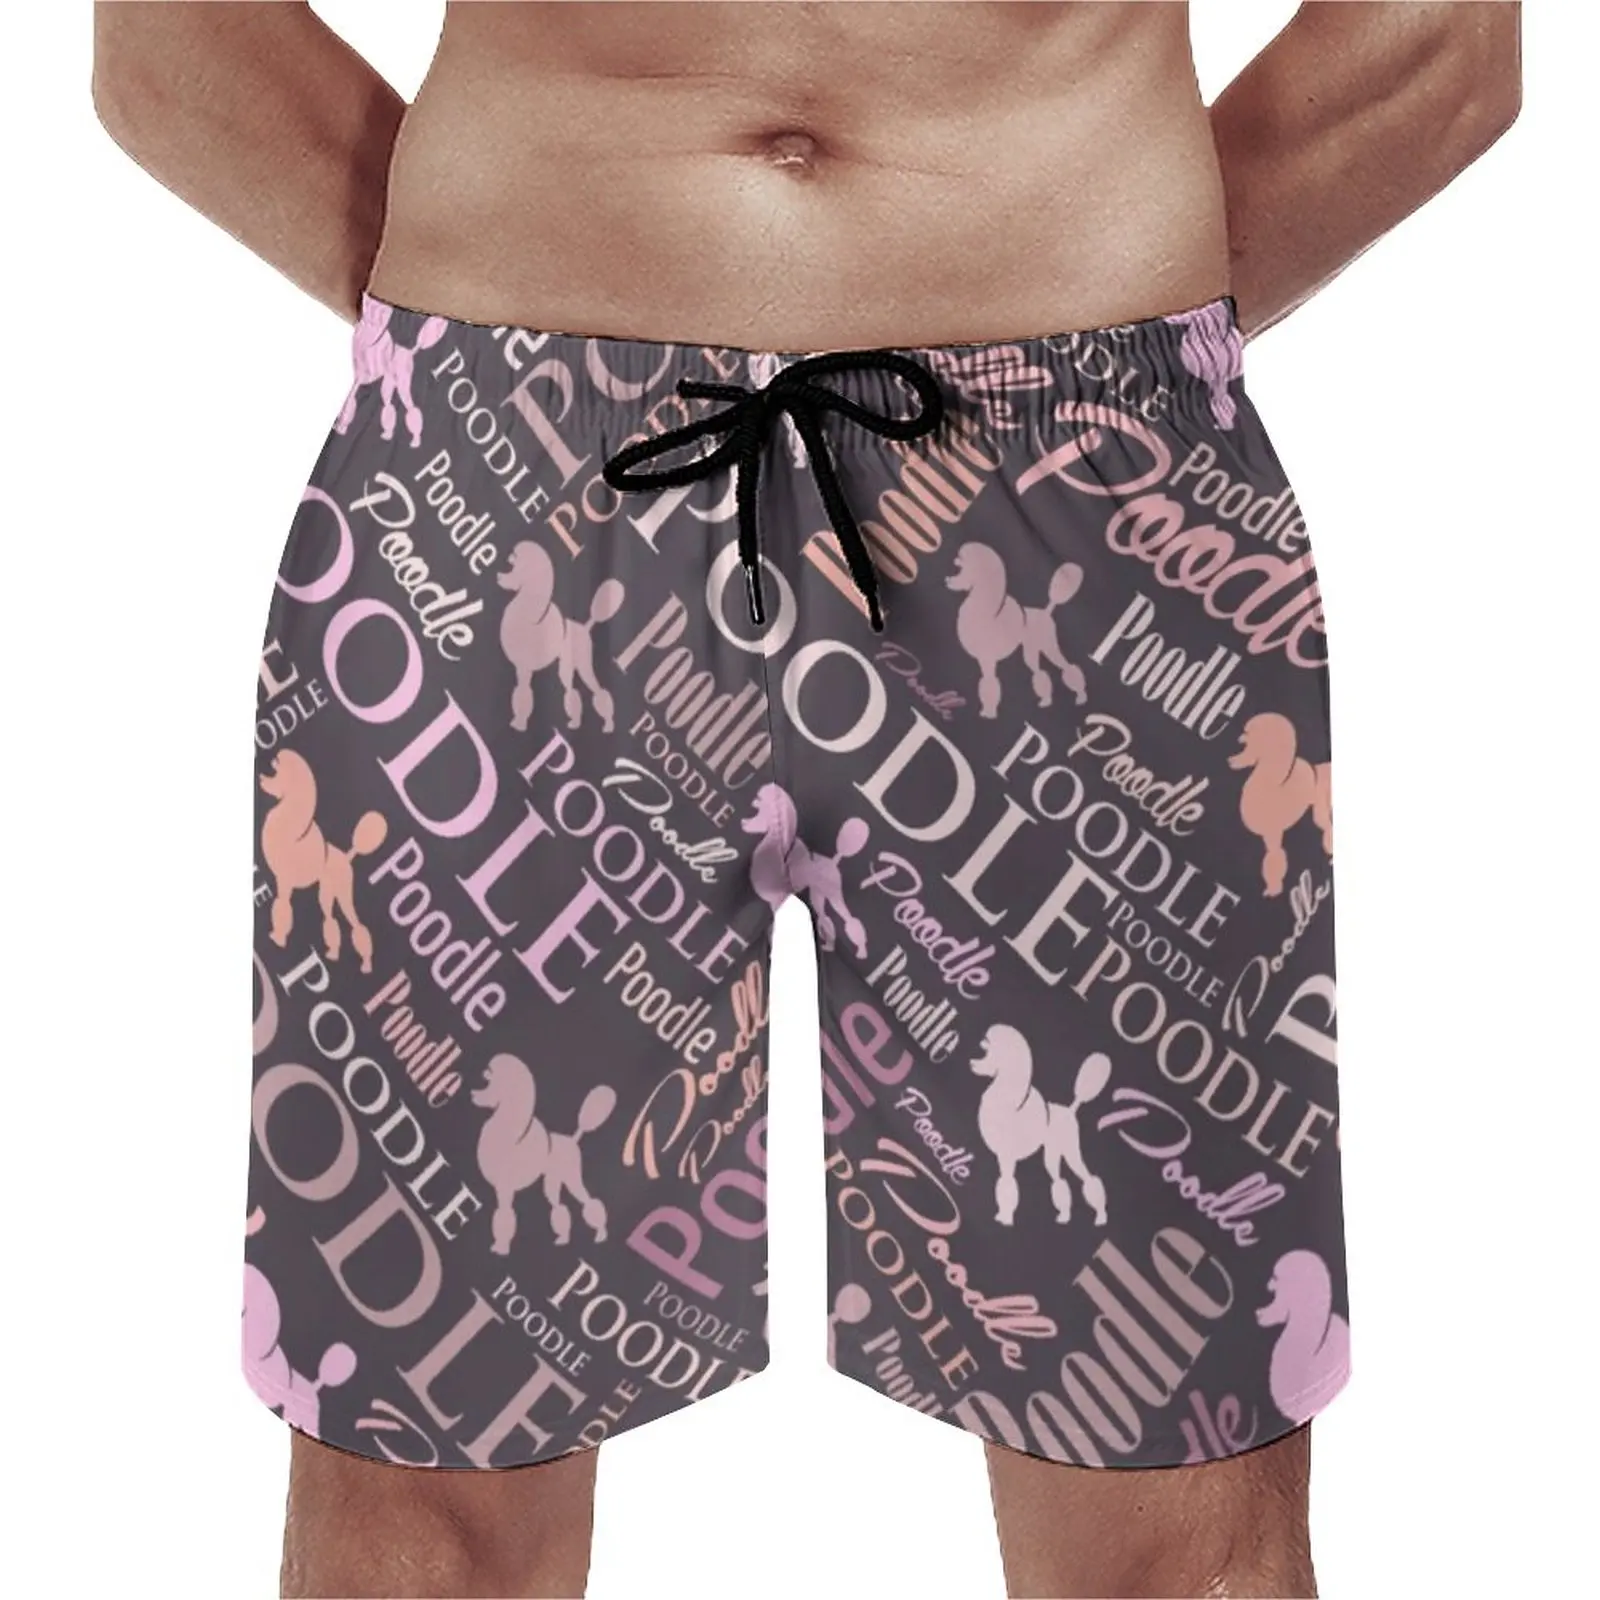 

Мужские пляжные шорты с эластичной резинкой на талии и буквенным принтом